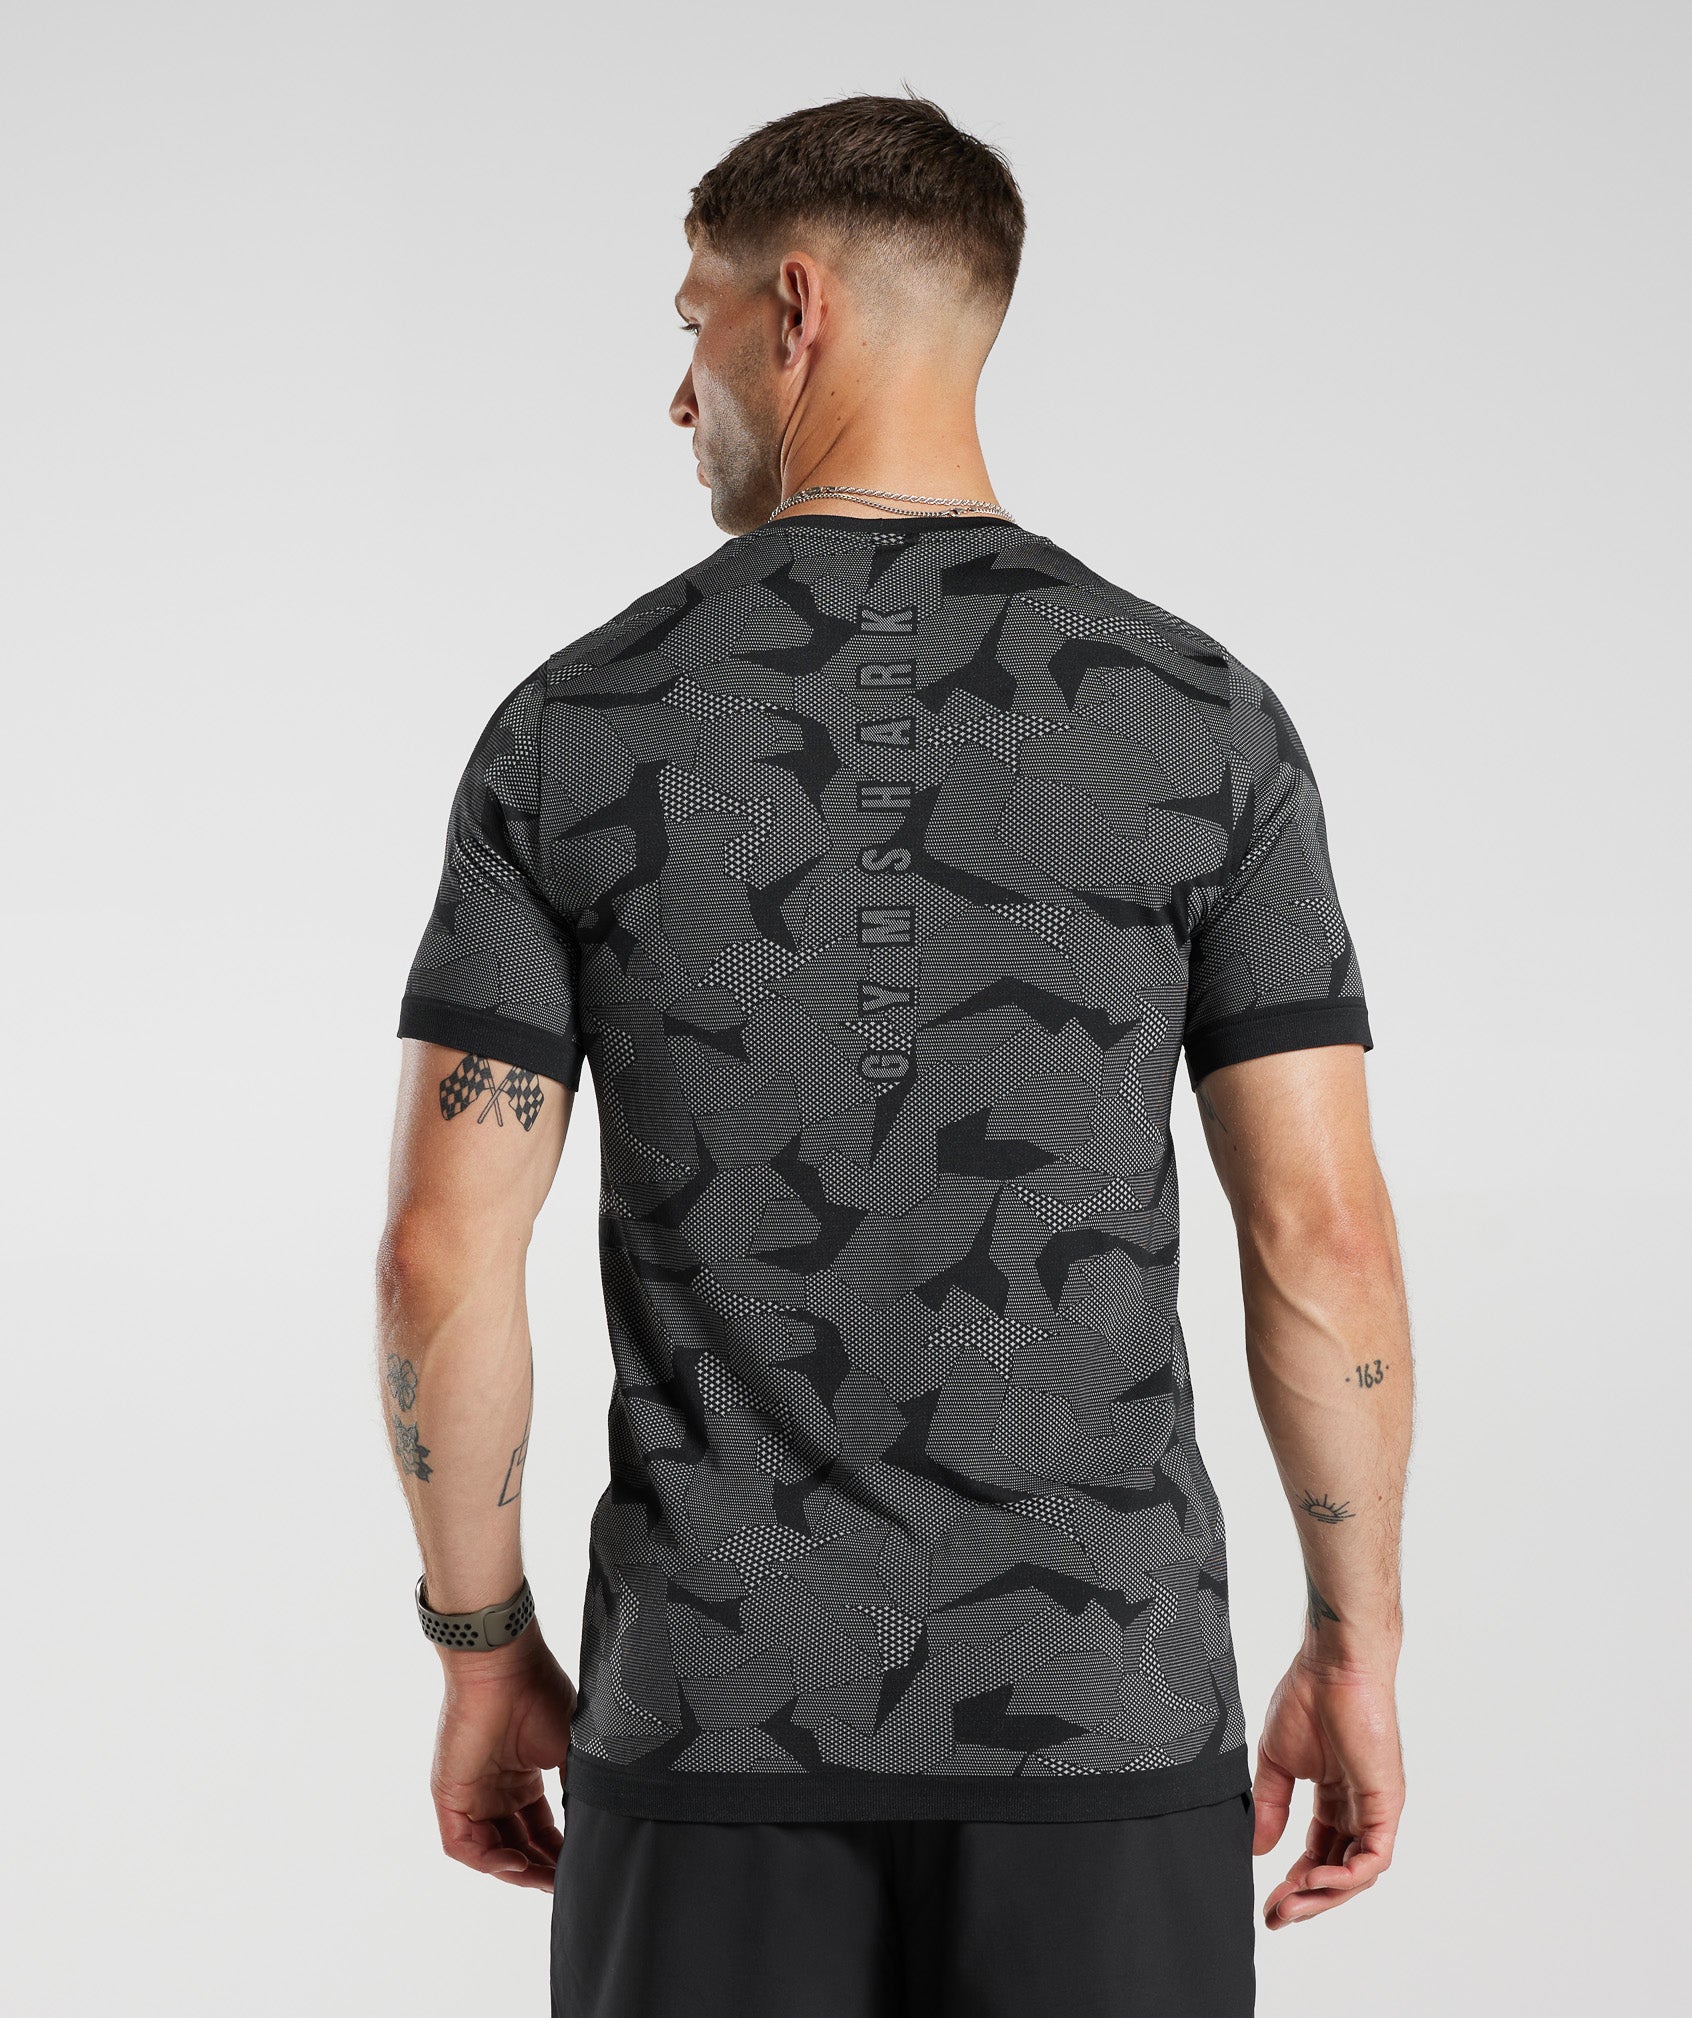 Gymshark Sport Seamless T-Shirt - Black/Light Grey